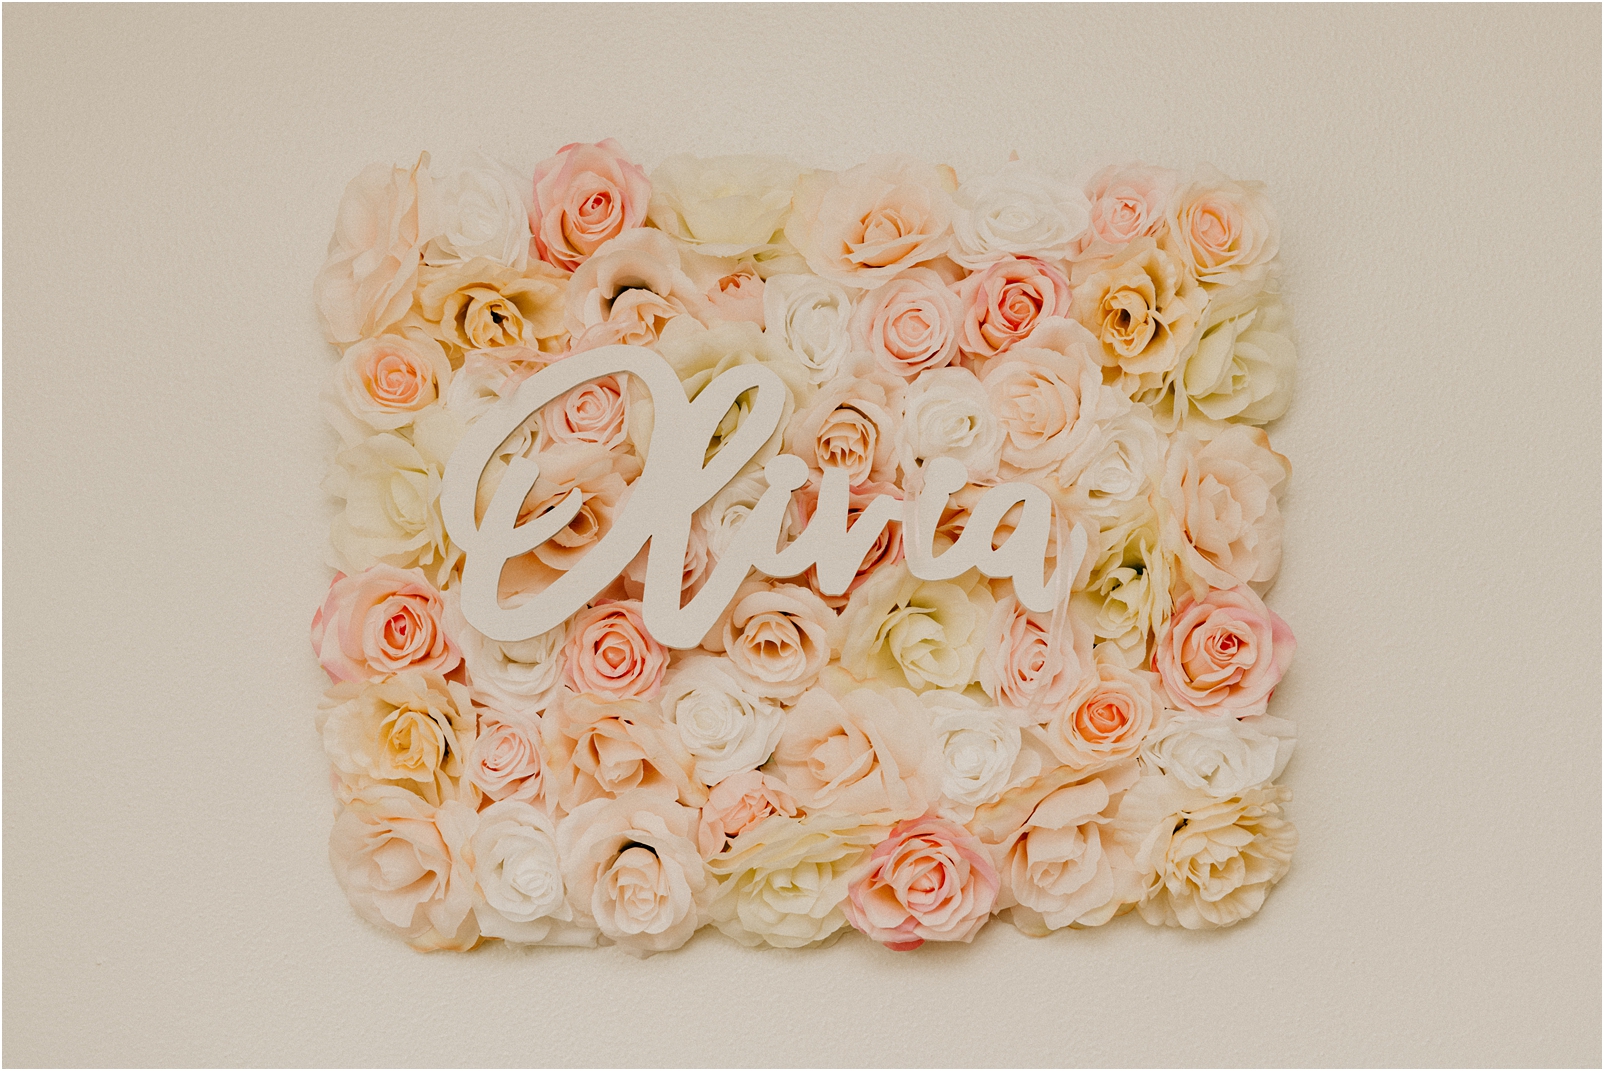 Olivia nameplate on flowers